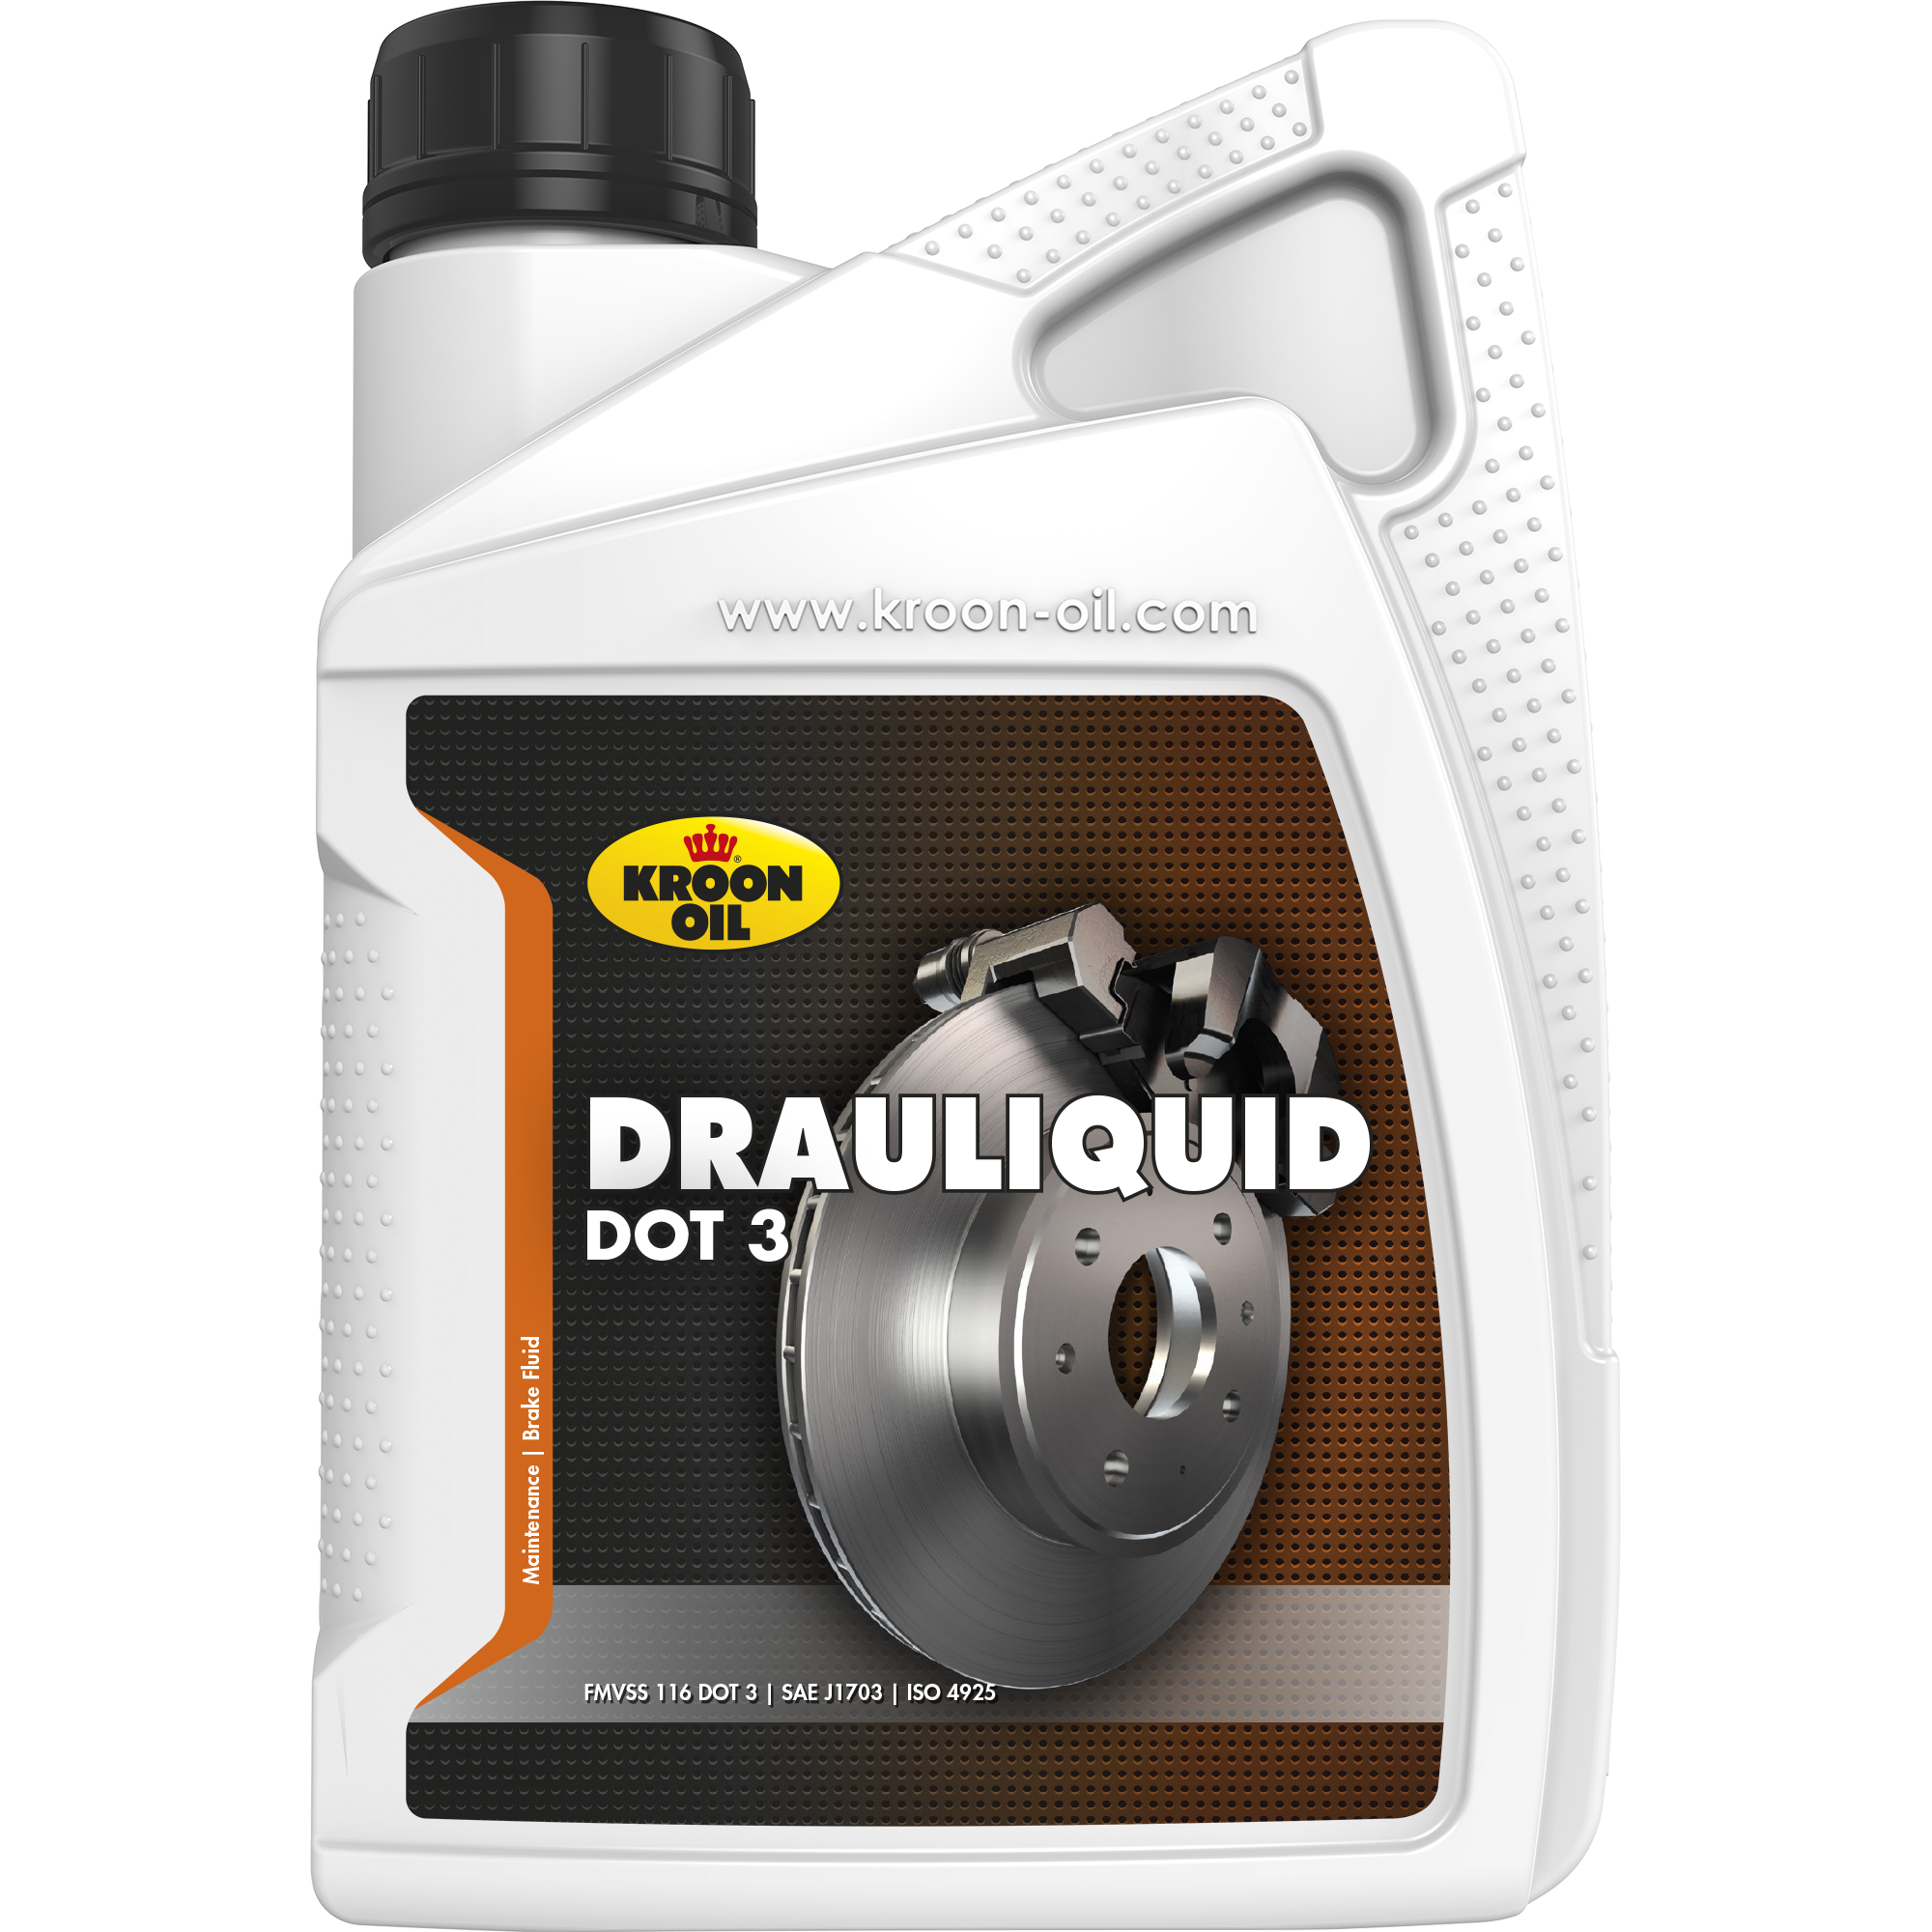 Kroon-Oil Drauliquid DOT 3, 12 x 1 lt detail 2